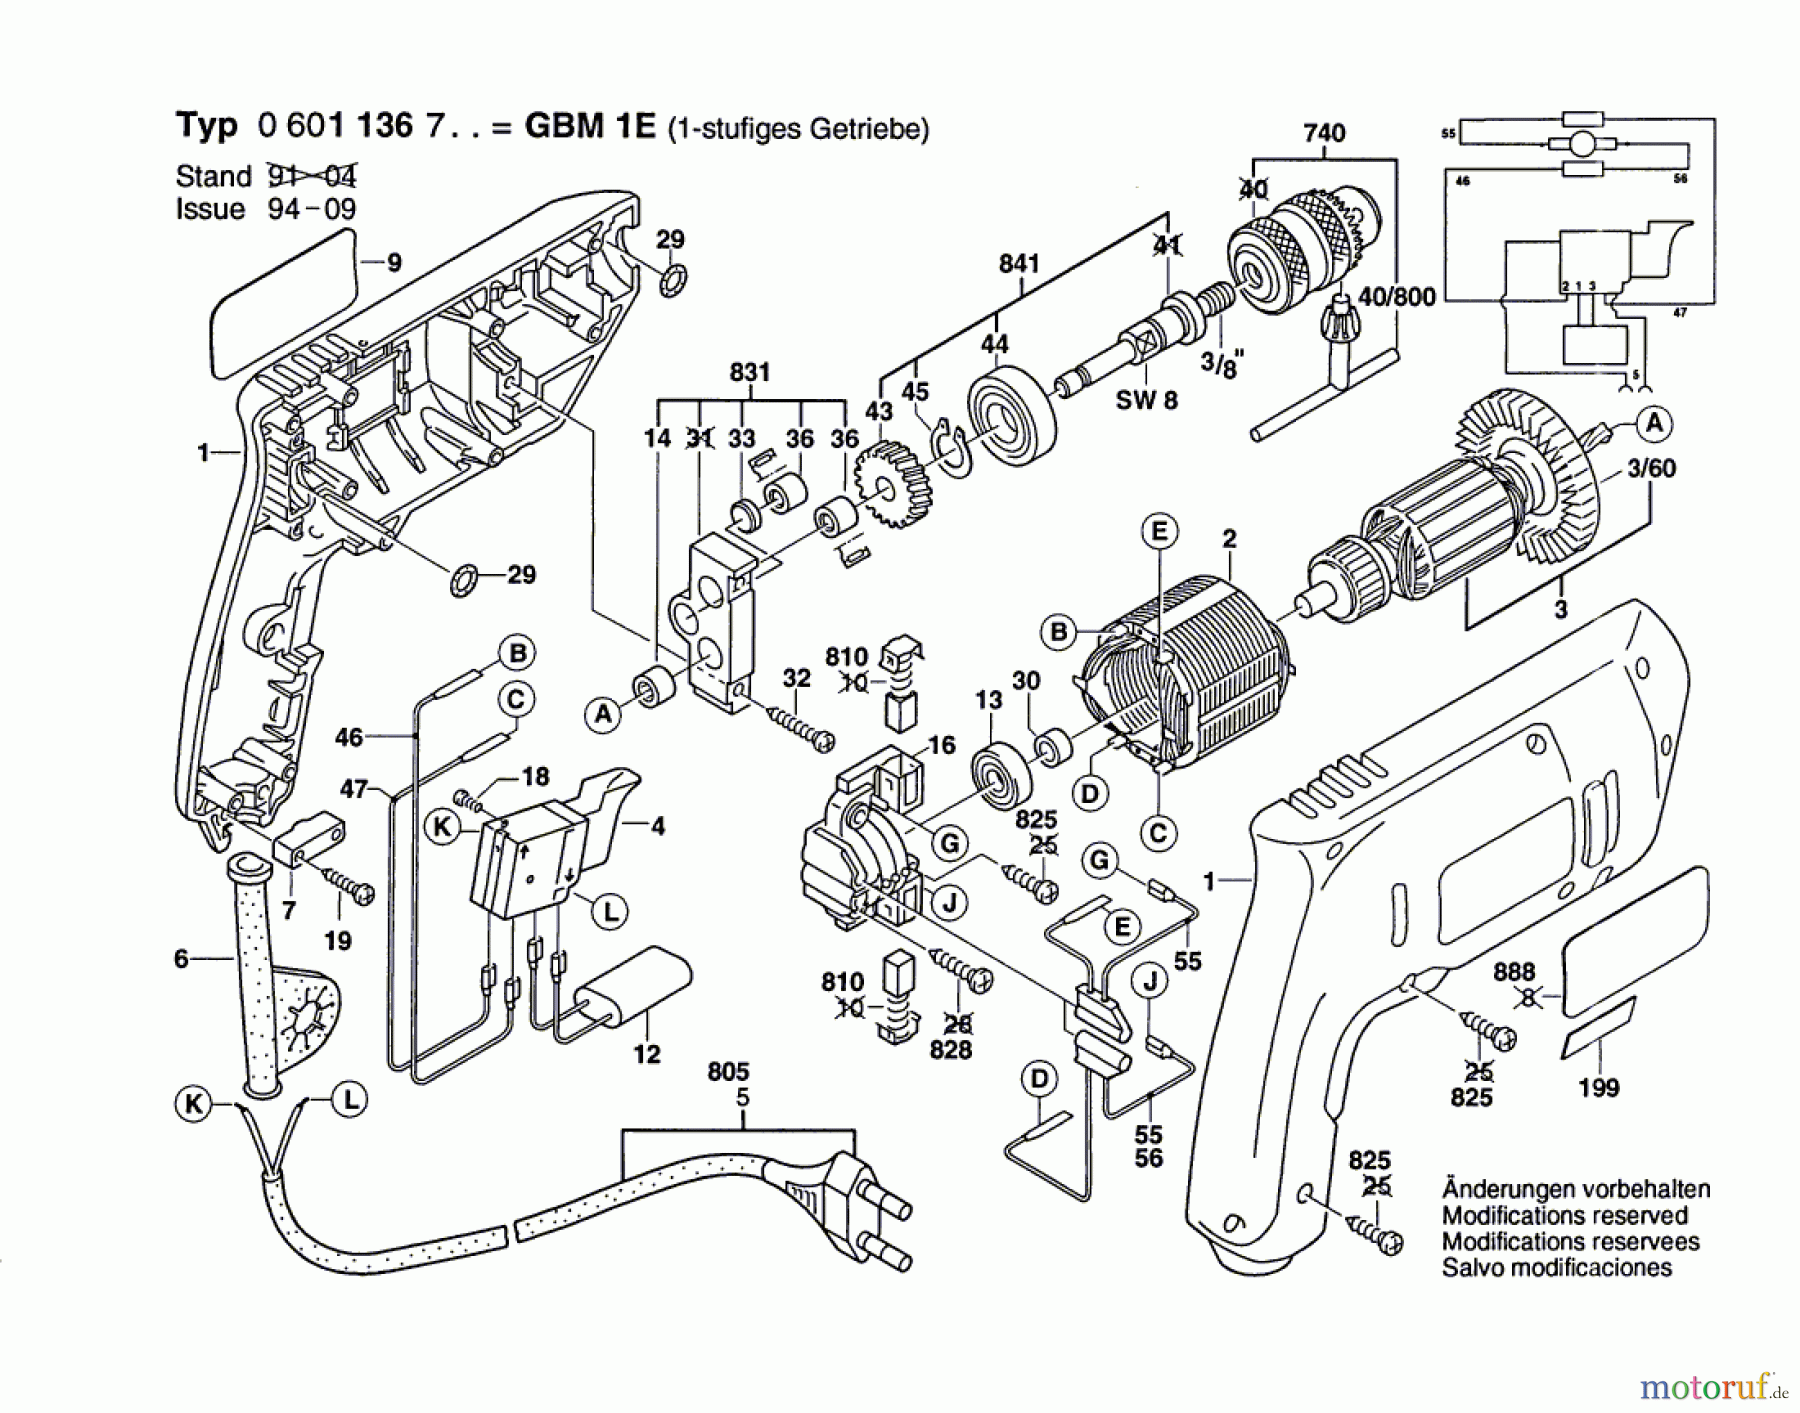  Bosch Werkzeug Bohrmaschine GBM 1 E Seite 1